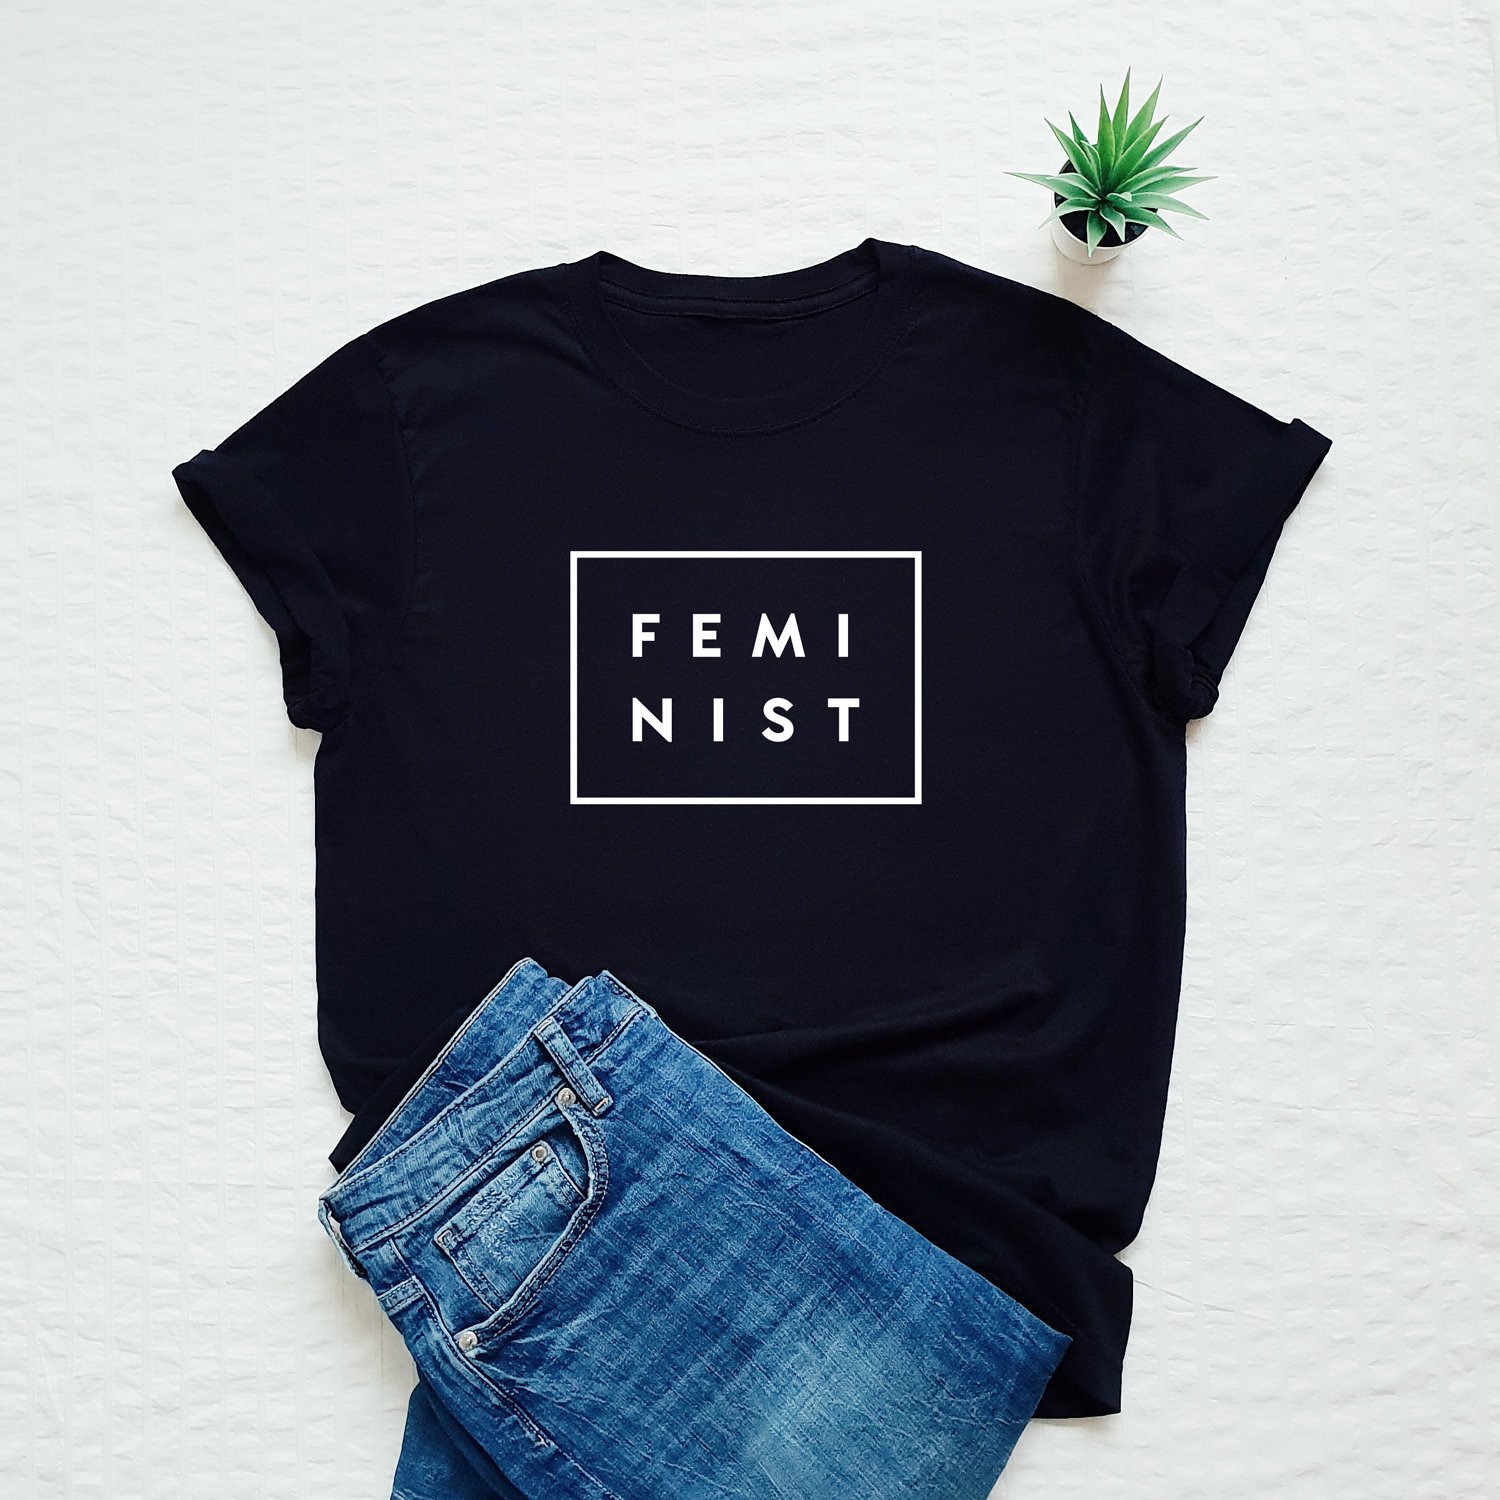 Camiseta Feminista - Feminist